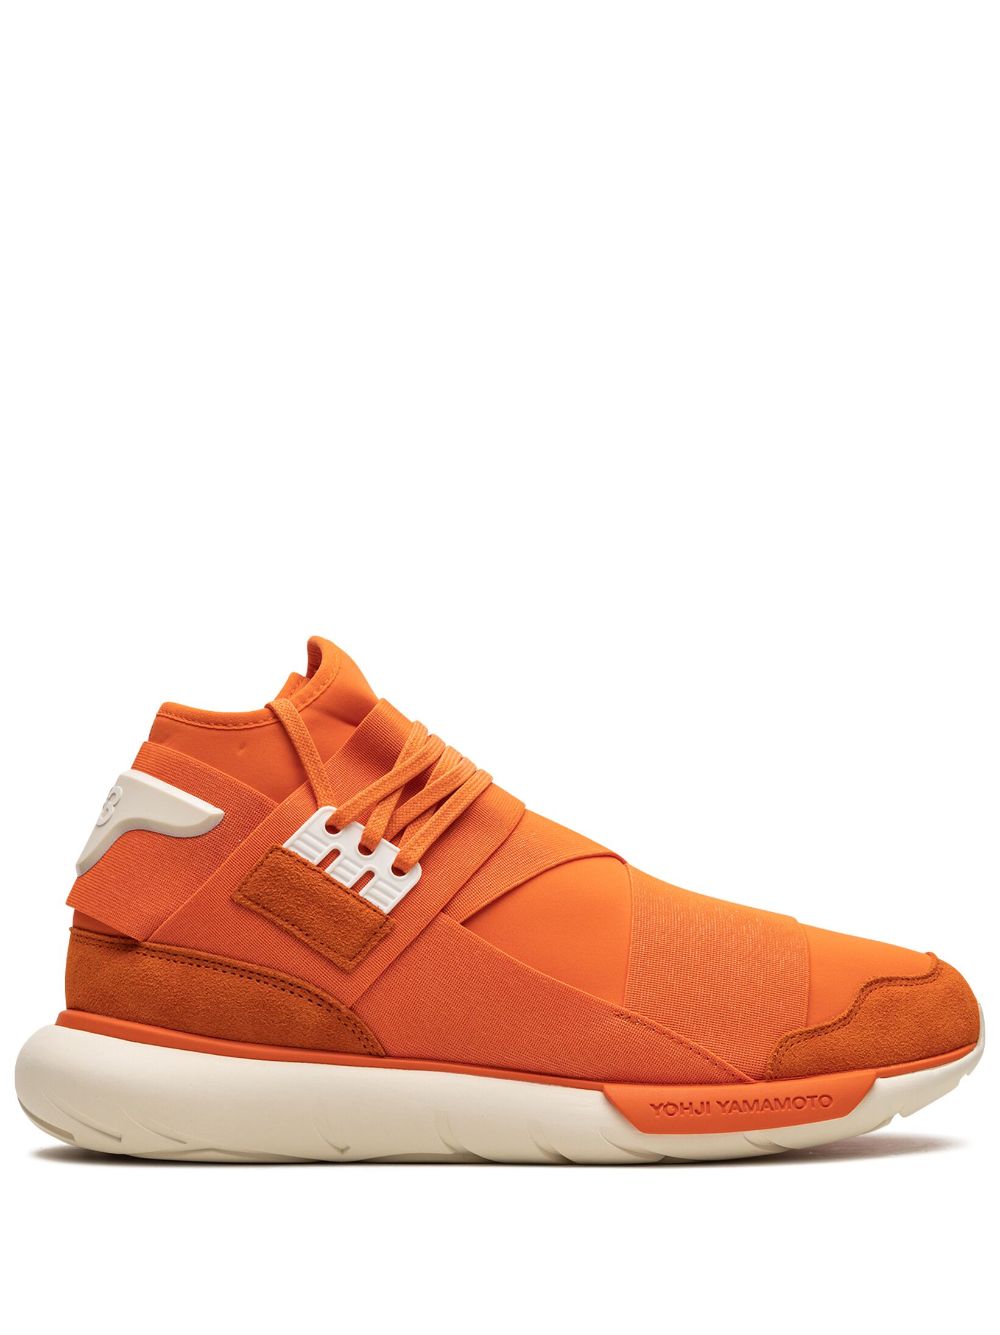 Adidas Originals Y-3 Qasa High-top Sneakers Orange |